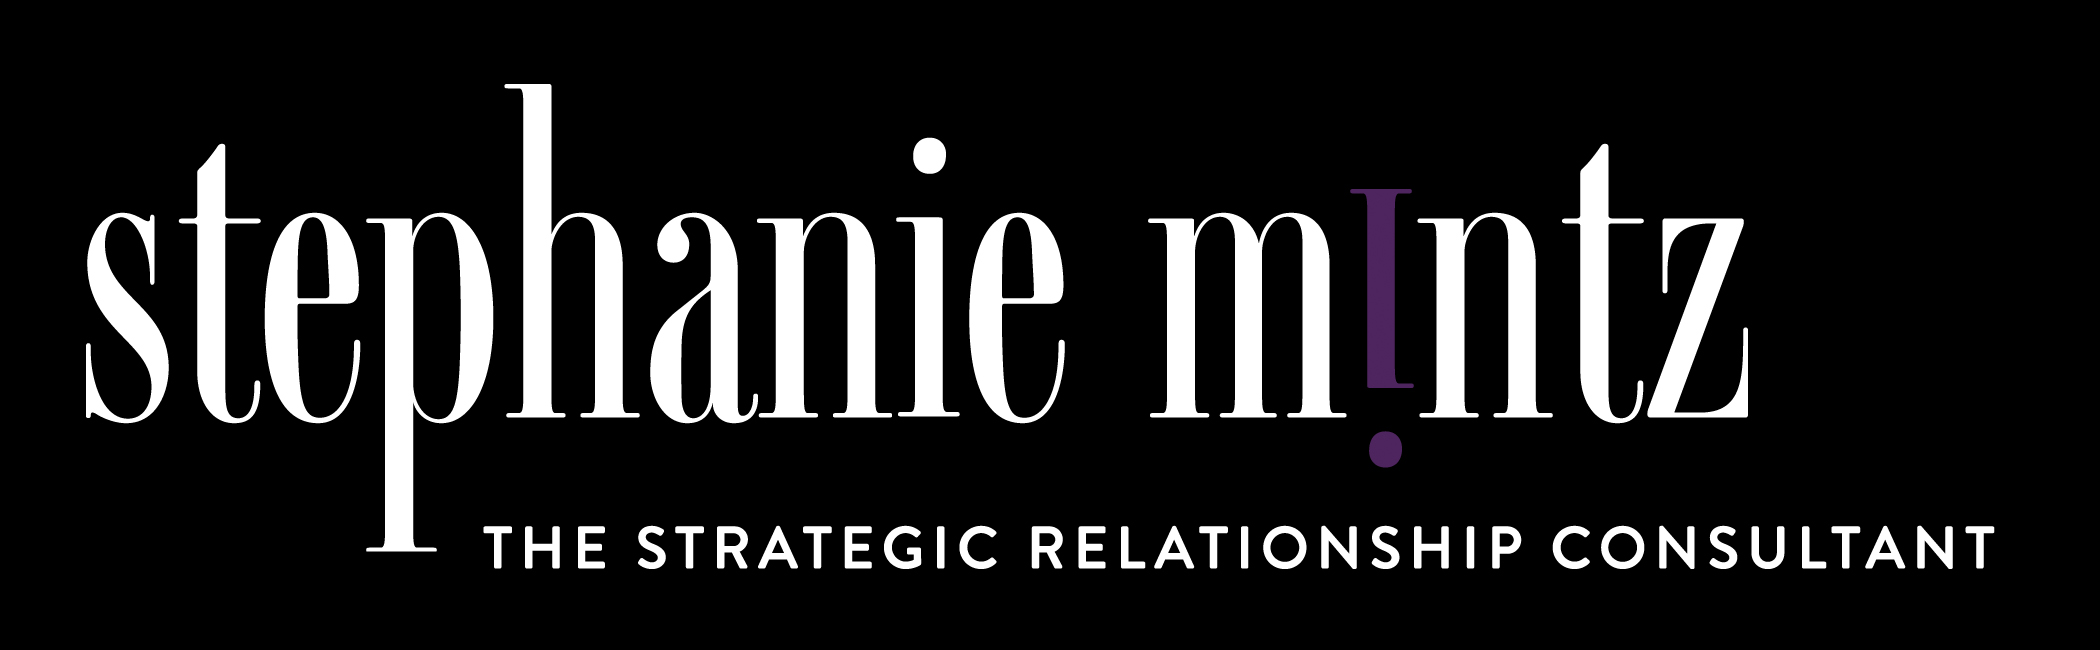 Strategic Relationship Consultant Logo